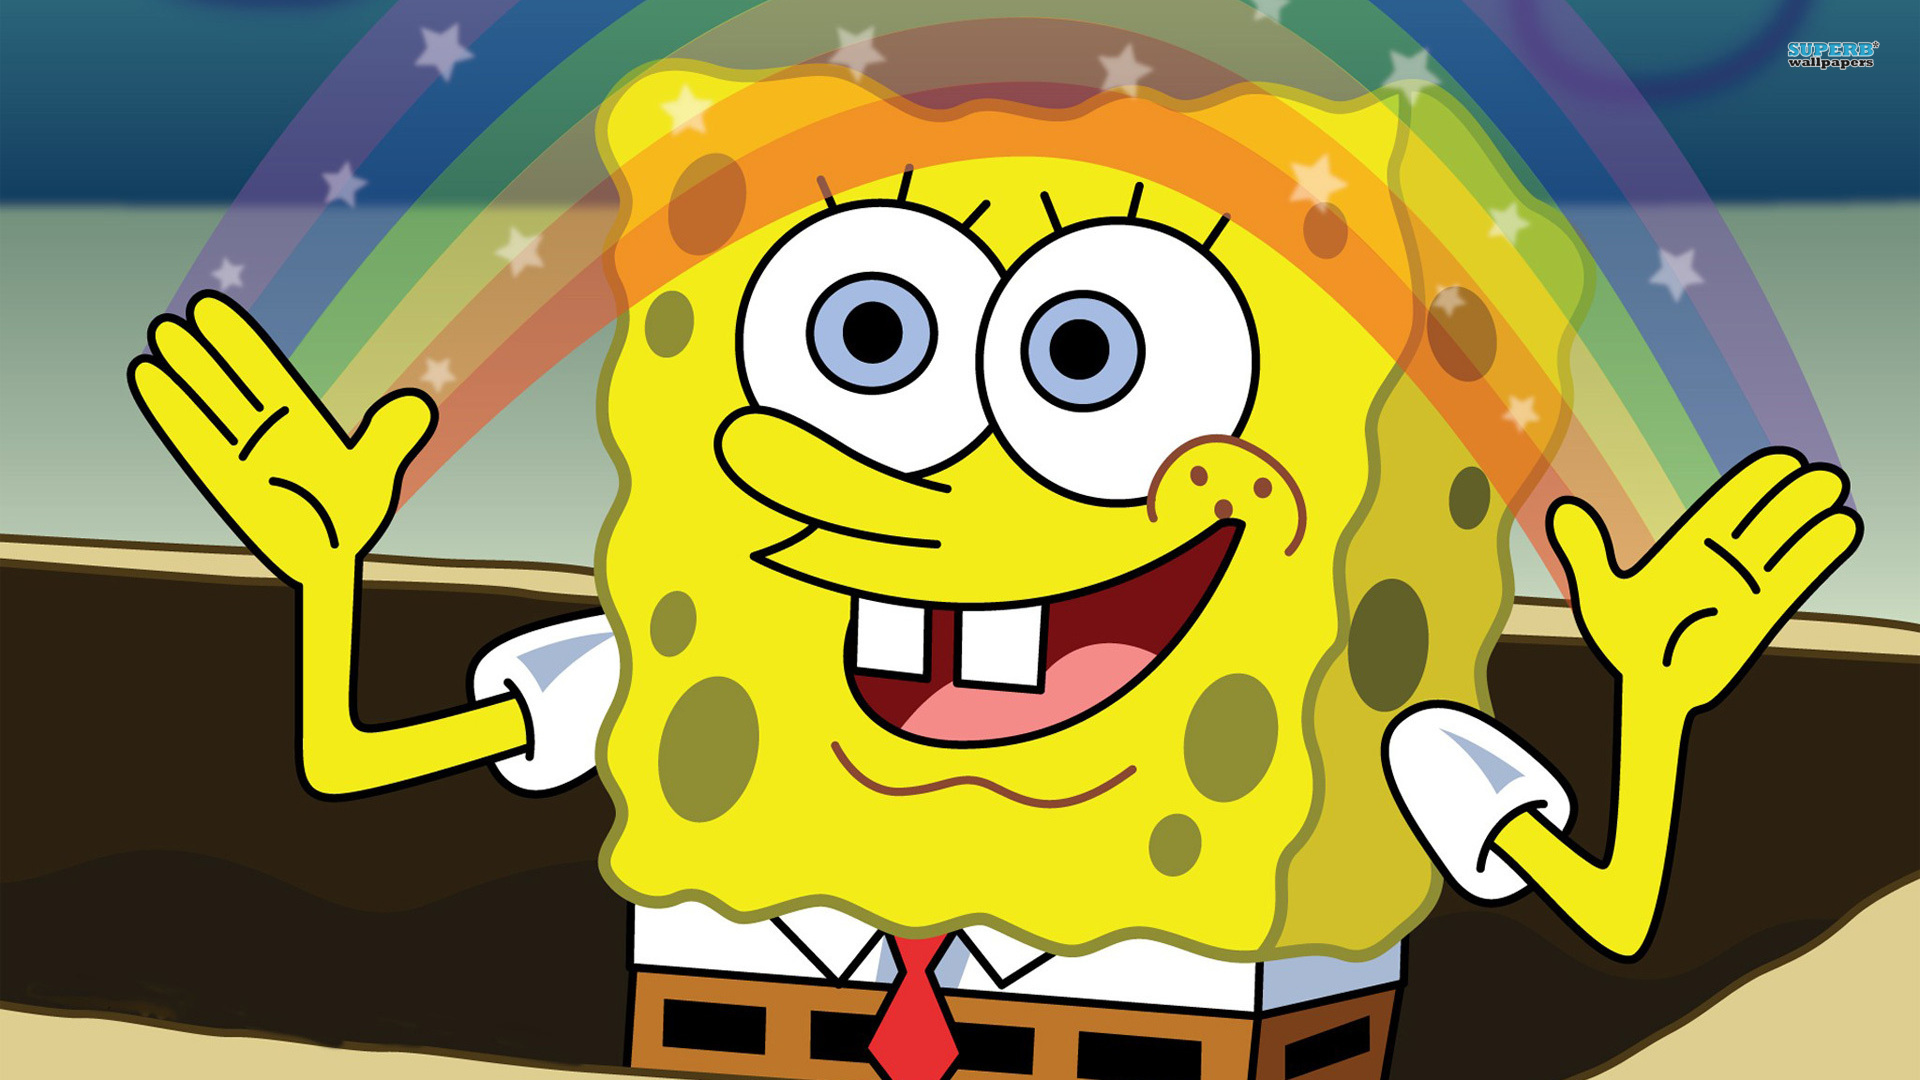 Spongebob Squarepants HD Wallpaper Image For iPhone